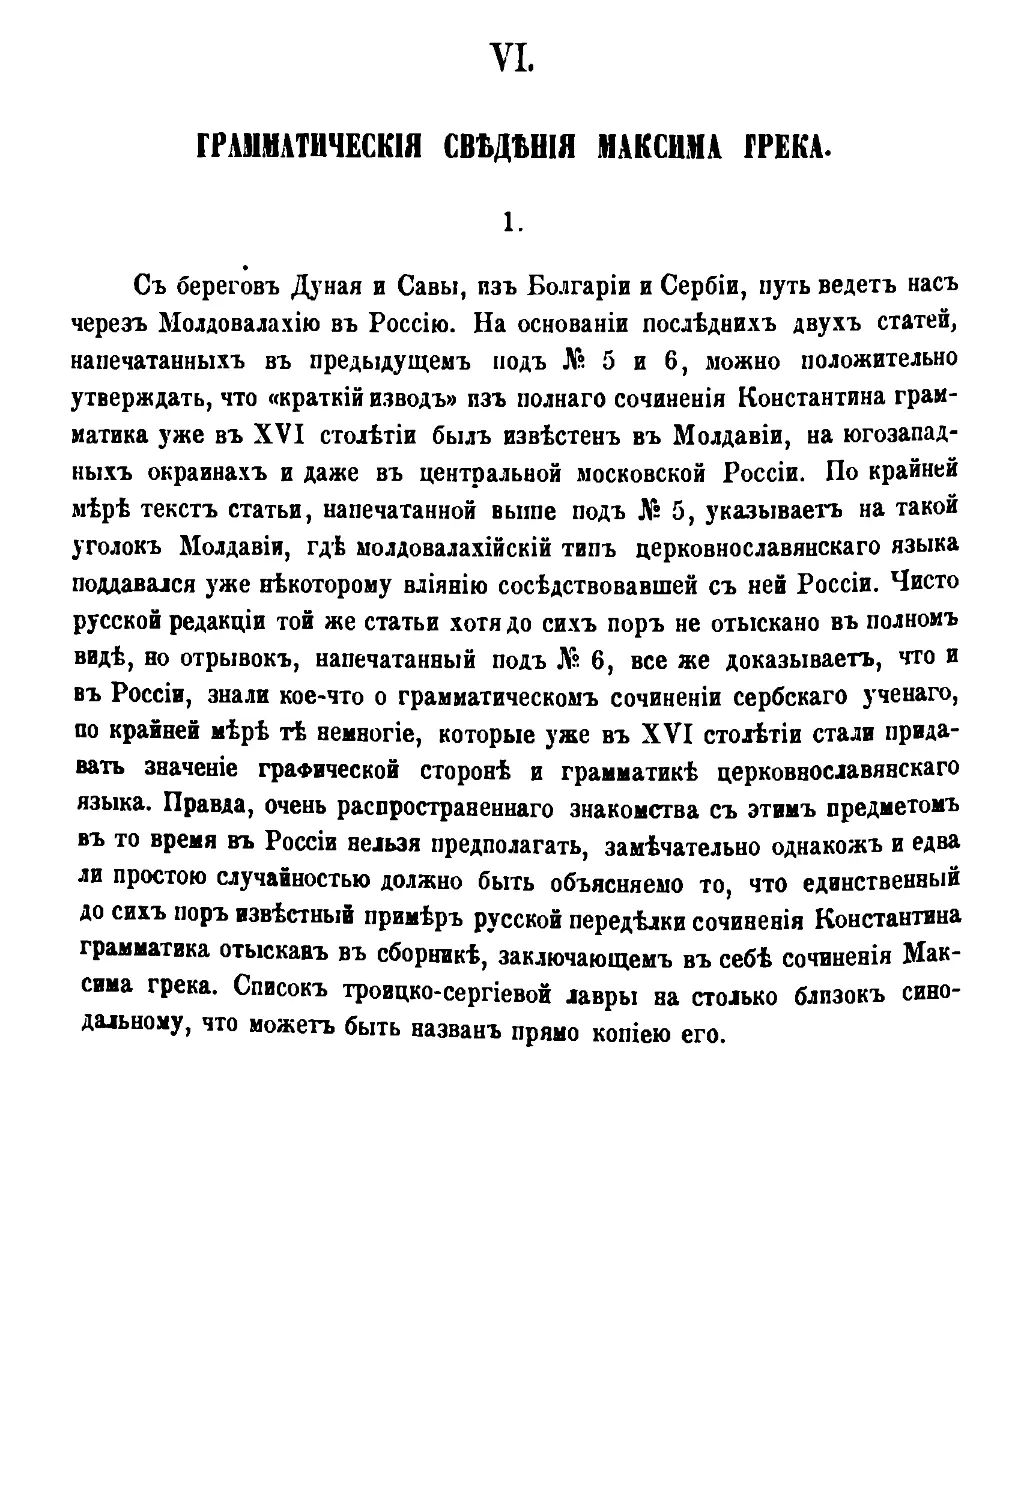 VI. Грамматические сведения Максима грека [294/582]